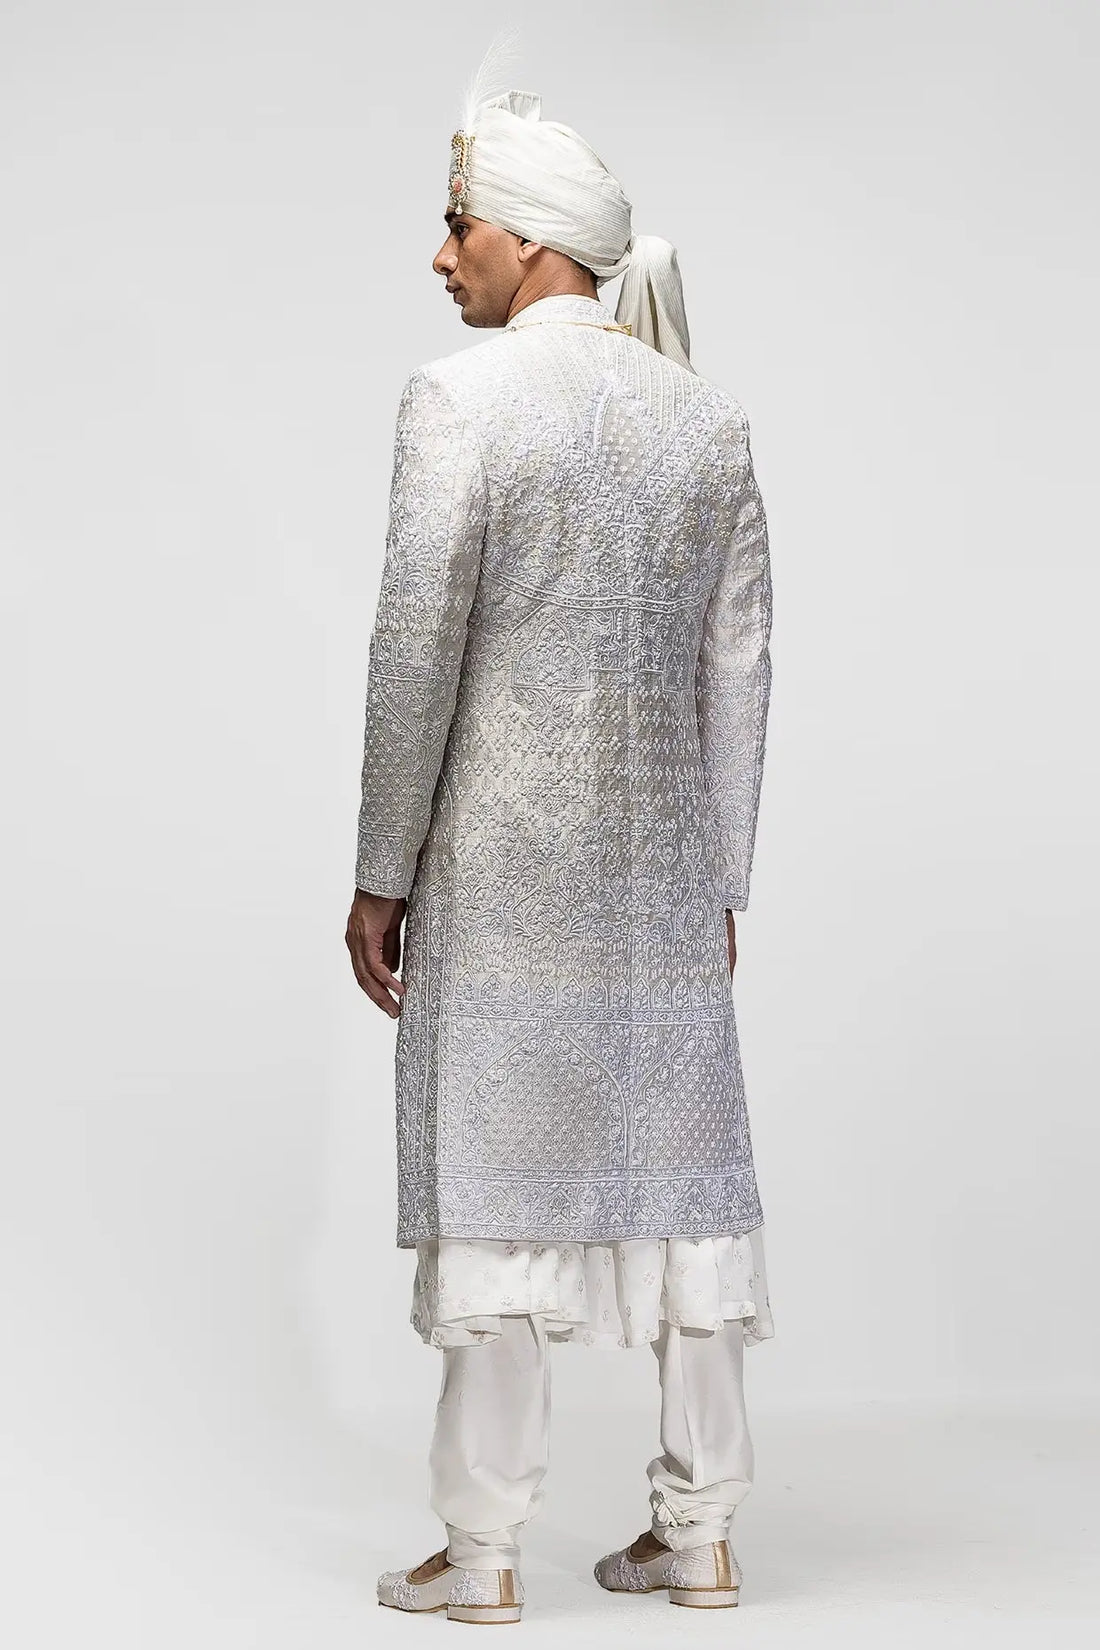 Ivory Panel Resham Embroidery Sherwani